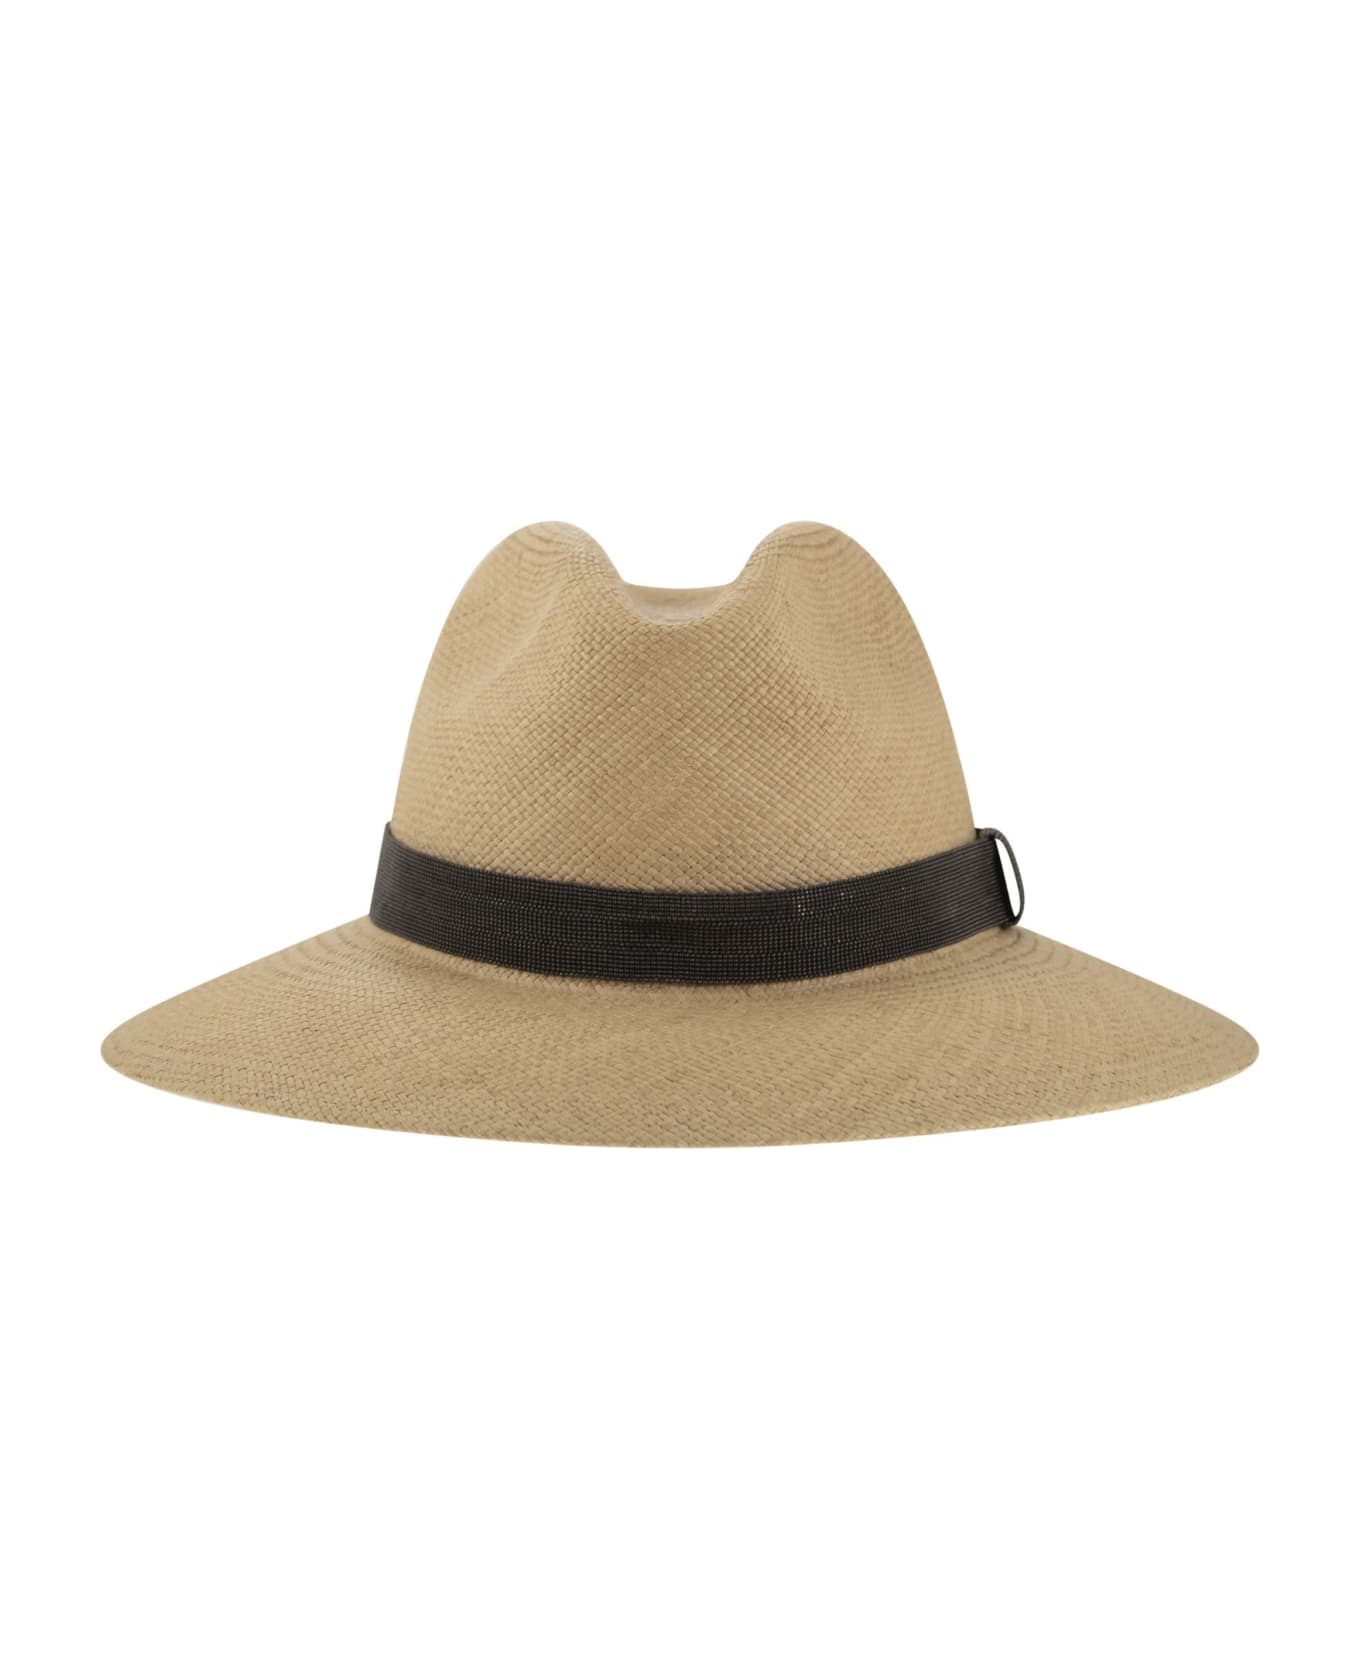 Brunello Cucinelli Straw Hat With Precious Band - Beige